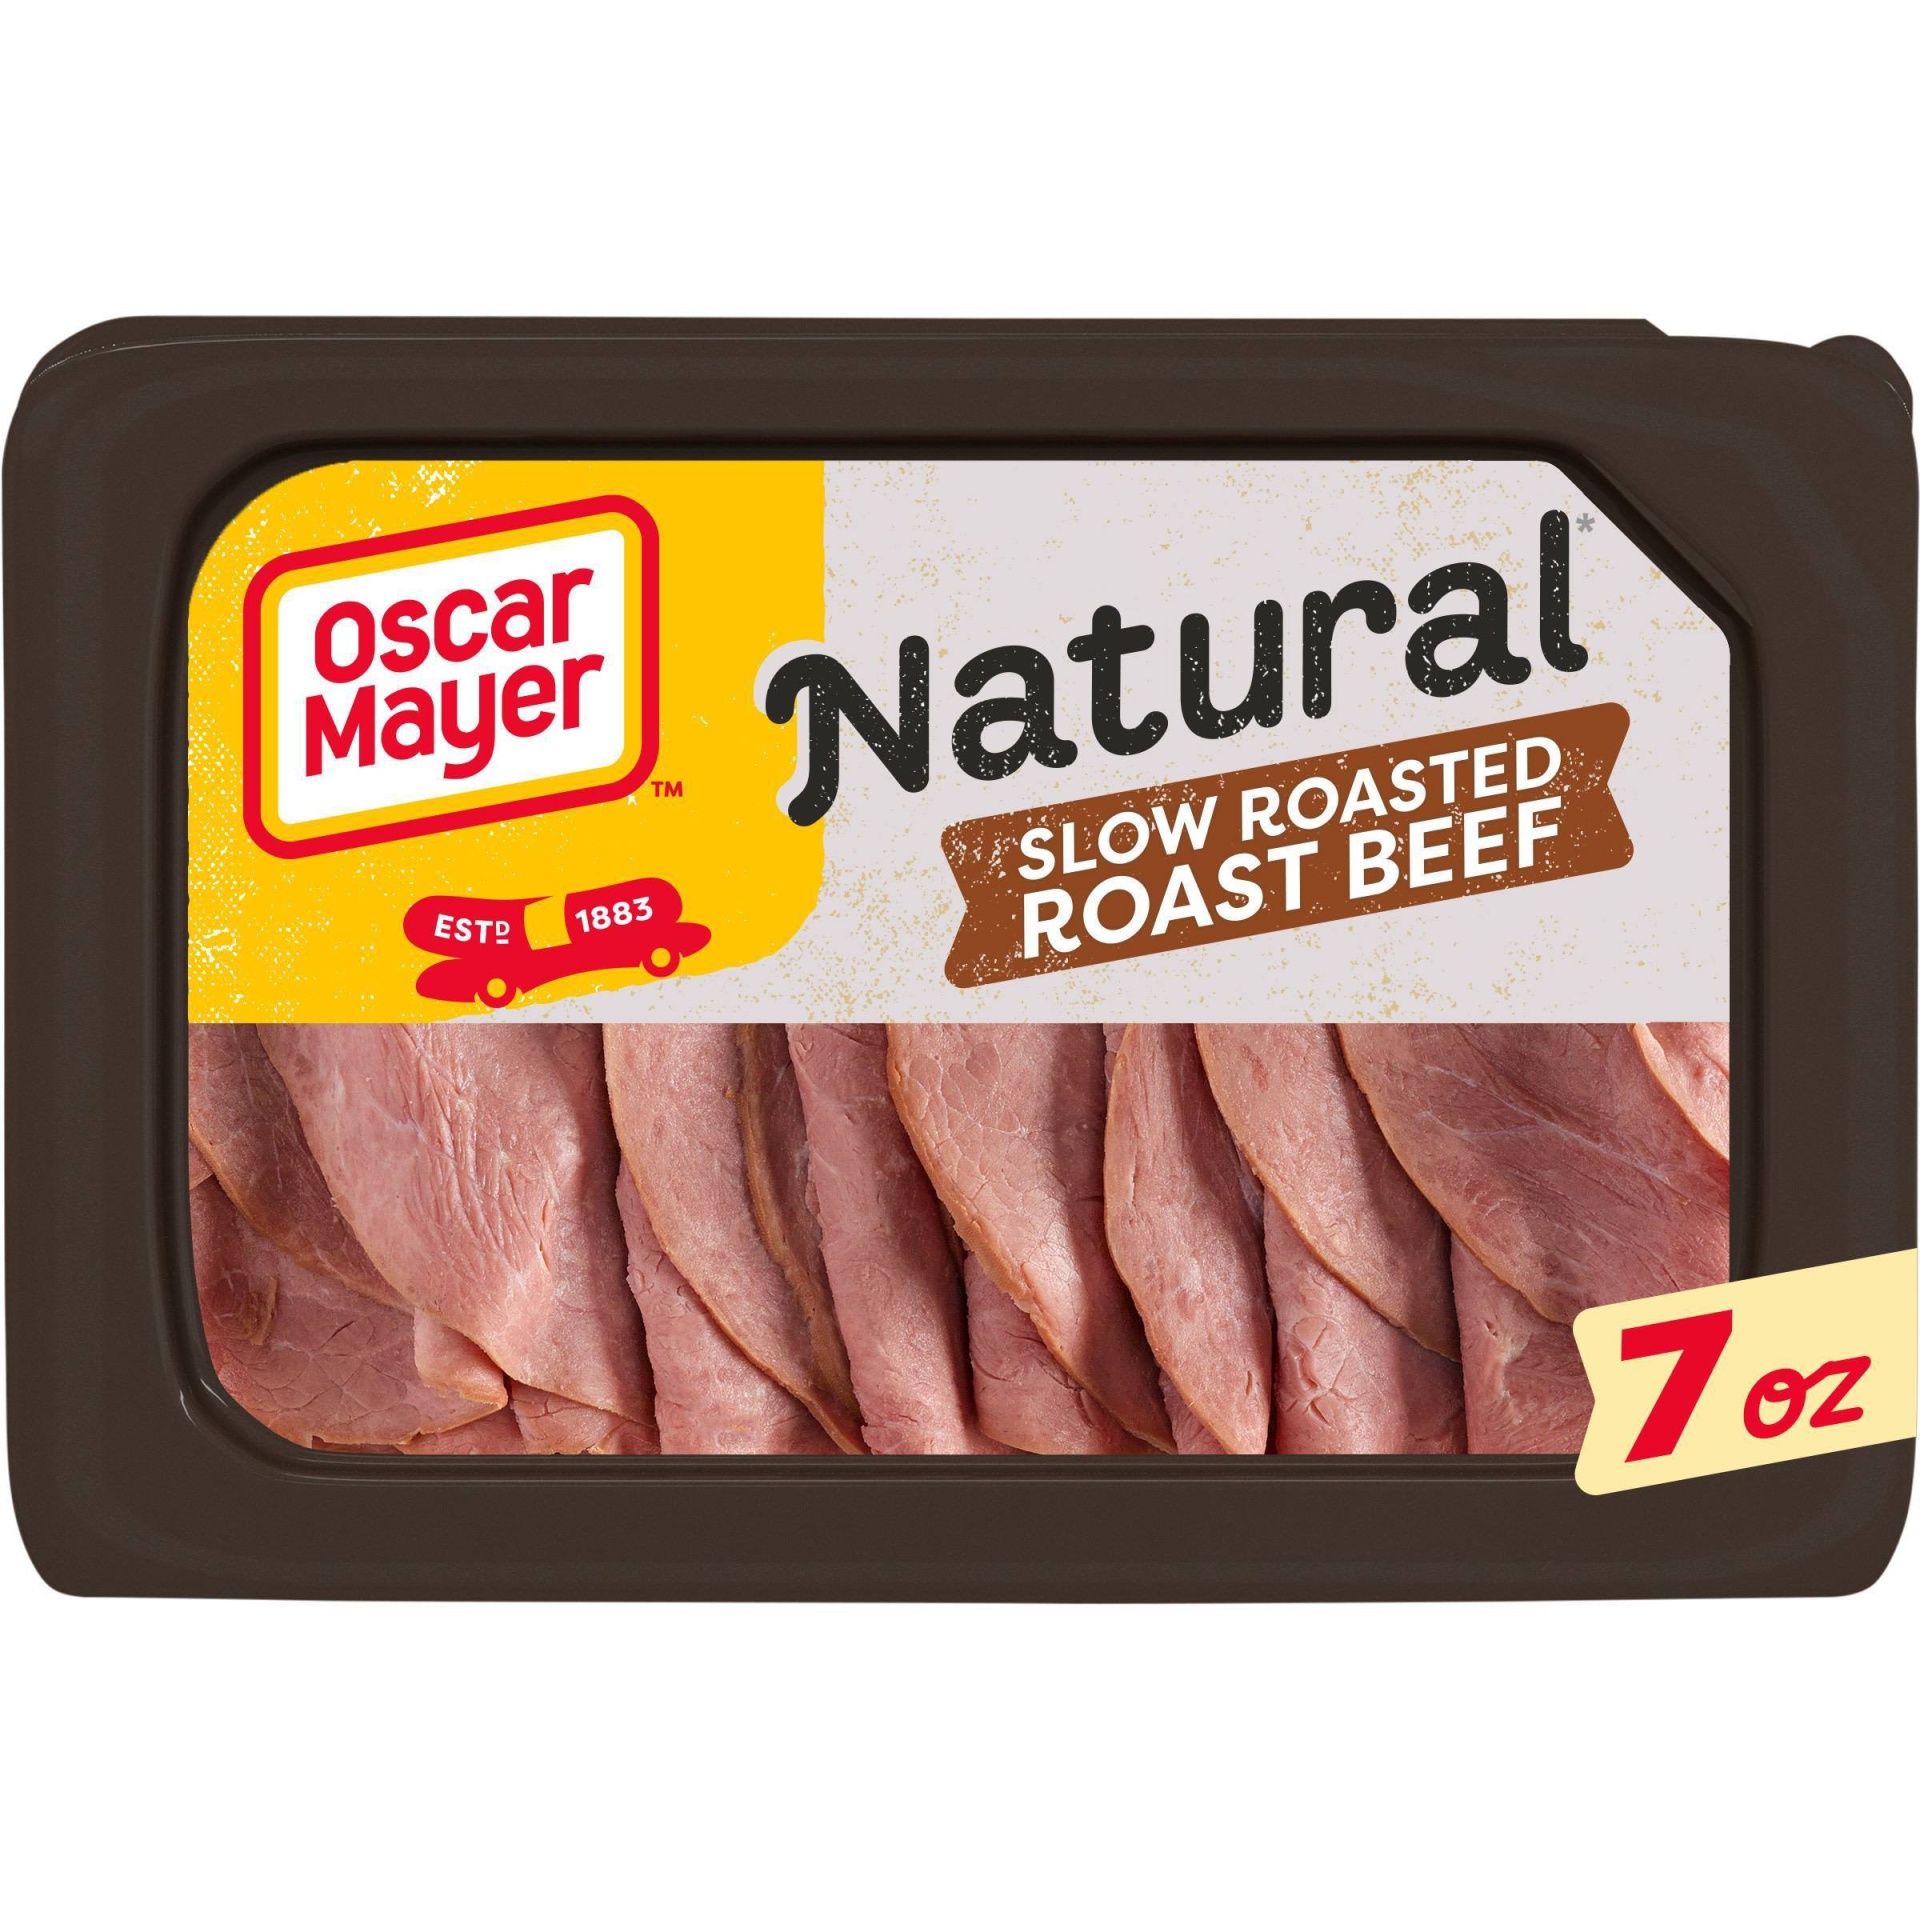 slide 1 of 10, Oscar Mayer Naturals Slow Roasted Roast Beef, 7 oz